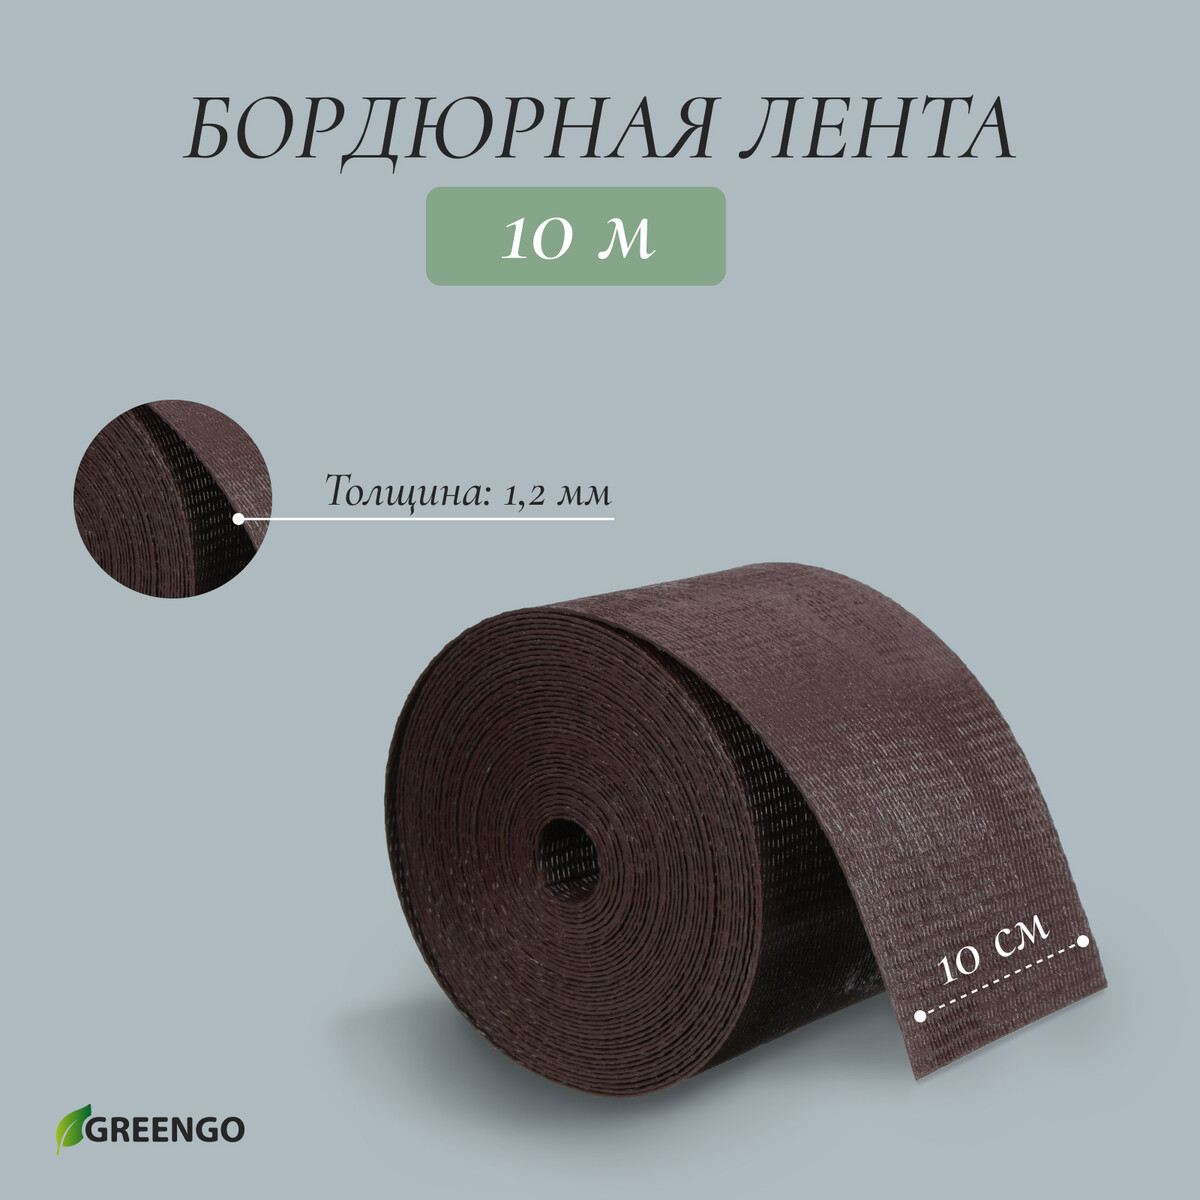 Лента бордюрная, 0.1 × 10 м, толщина 1.2 мм, пластиковая, коричневая, greengo лента бордюрная 0 1 × 10 м толщина 1 2 мм пластиковая коричневая greengo